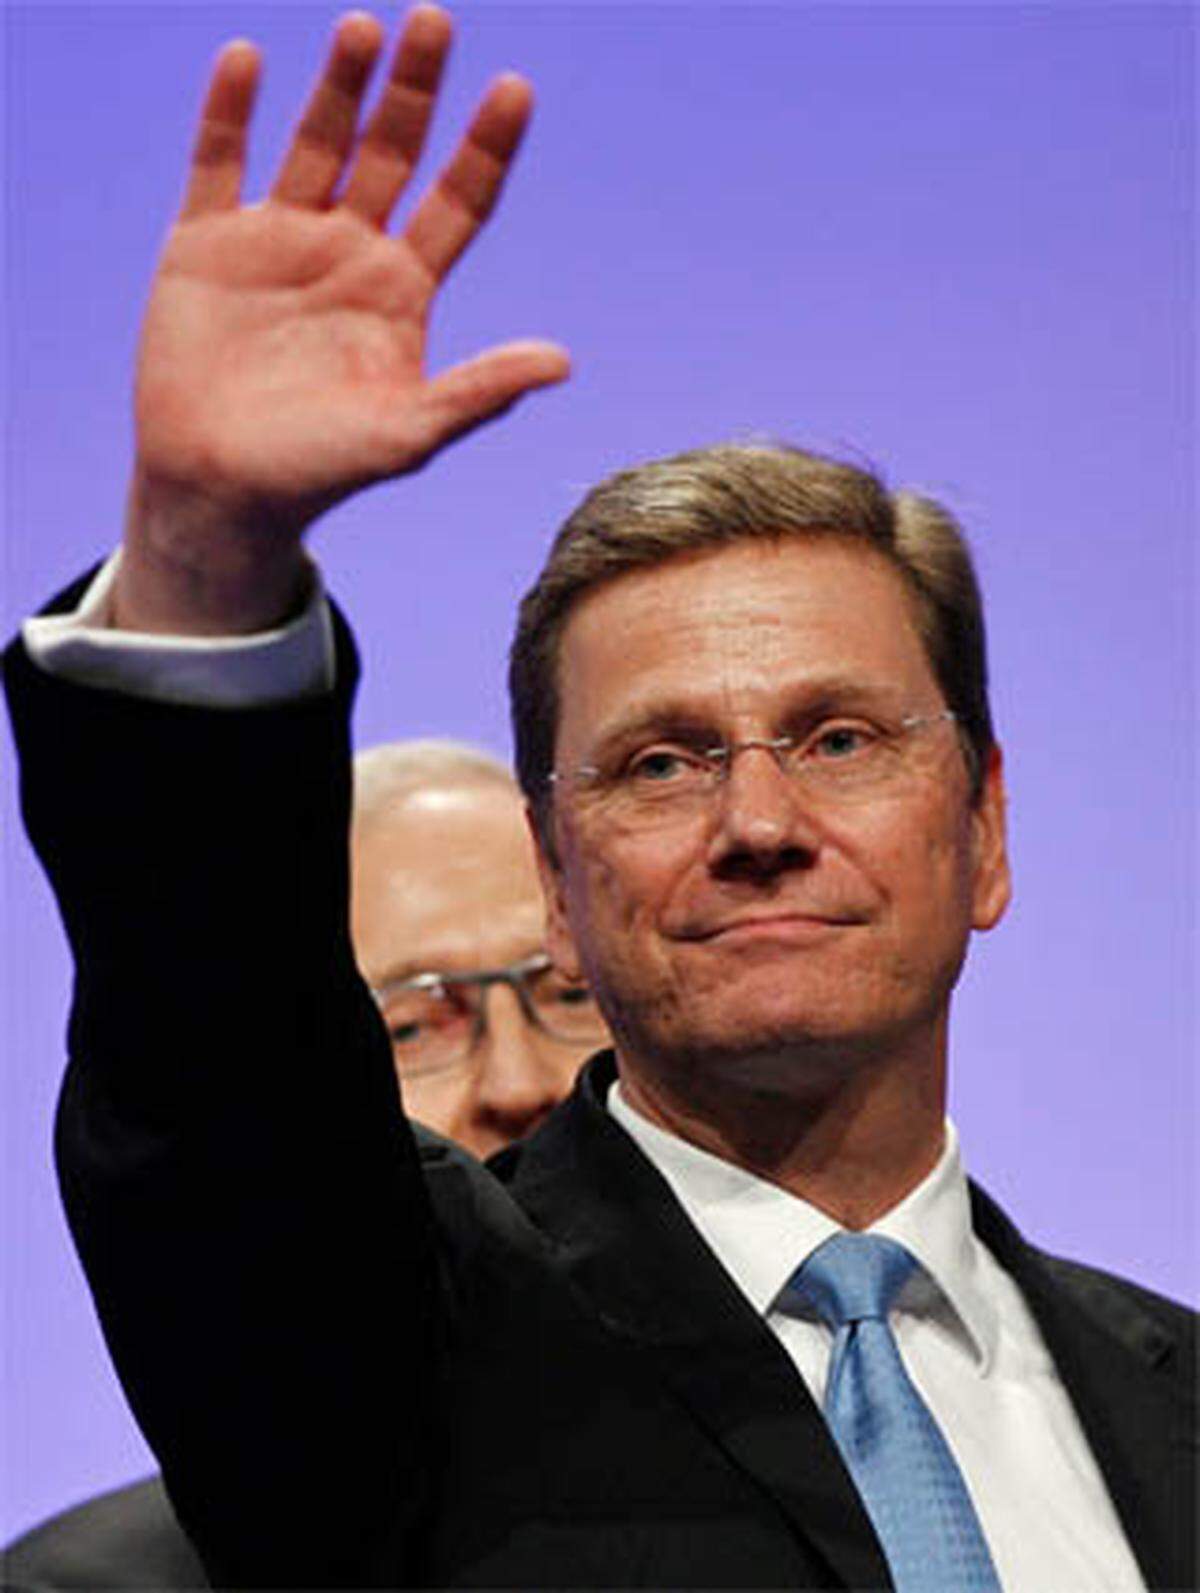 Guido Westerwelle erzielte 2009 mit seiner FDP ein Rekordergebnis bei der deutschen Bundestagswahl.